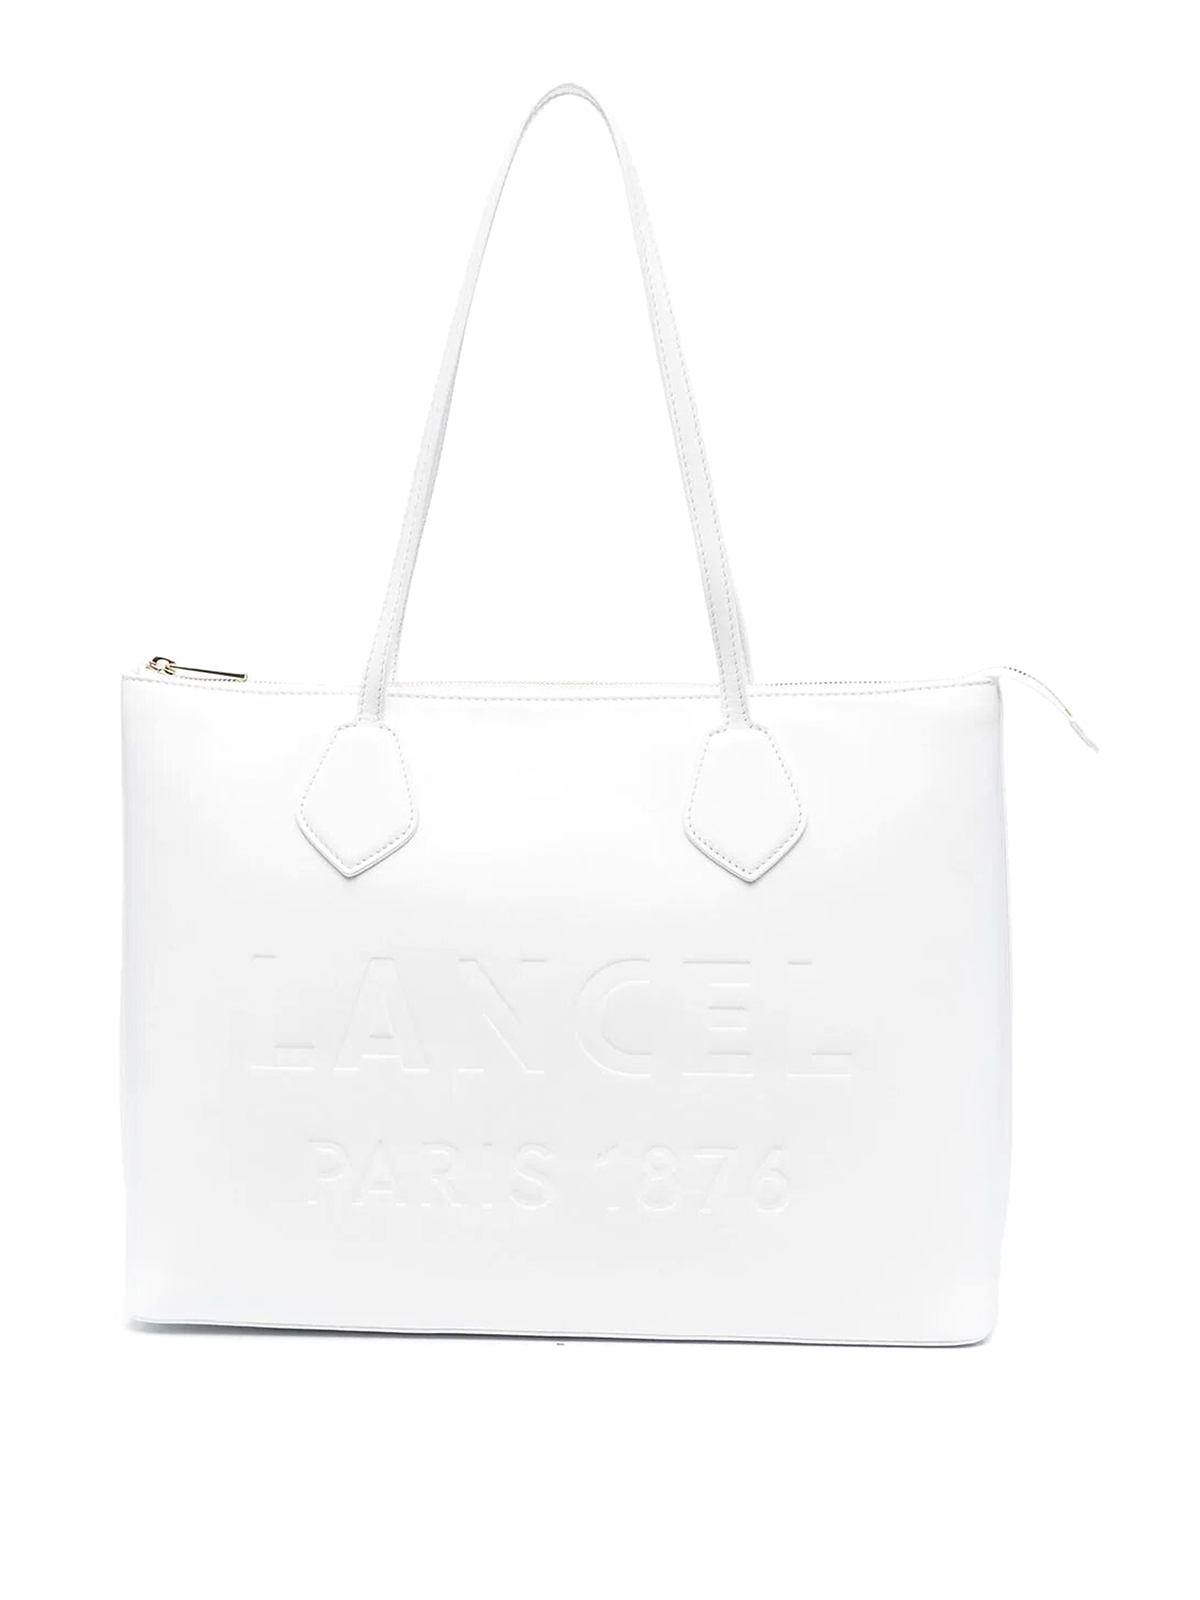 Totes bags Lancel - Essential zip tote - A12135O7 | thebs.com [ikrix.com]